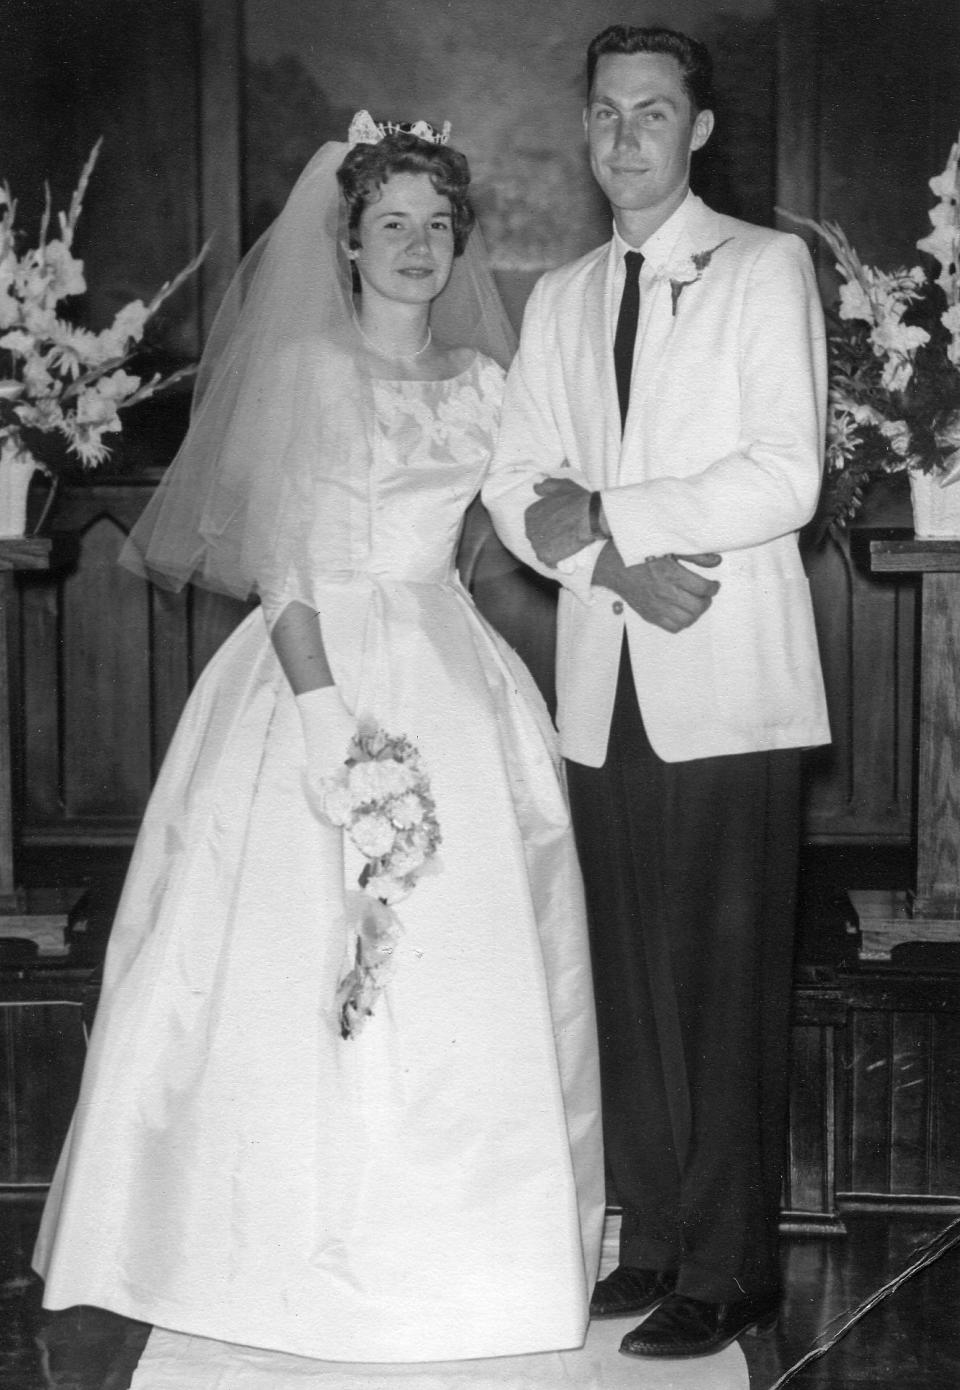 Carolyn and Bill Suman on their wedding day, July 7, 1963.